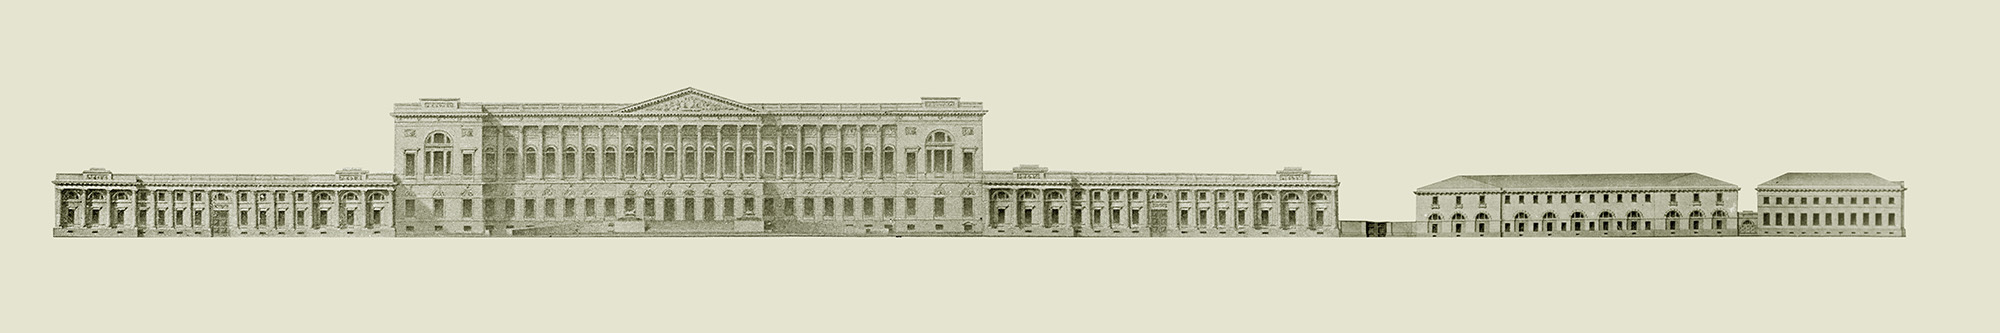 Лицевой фасад Михайловского дворца с флигелями. 1826 г. ГРМ.